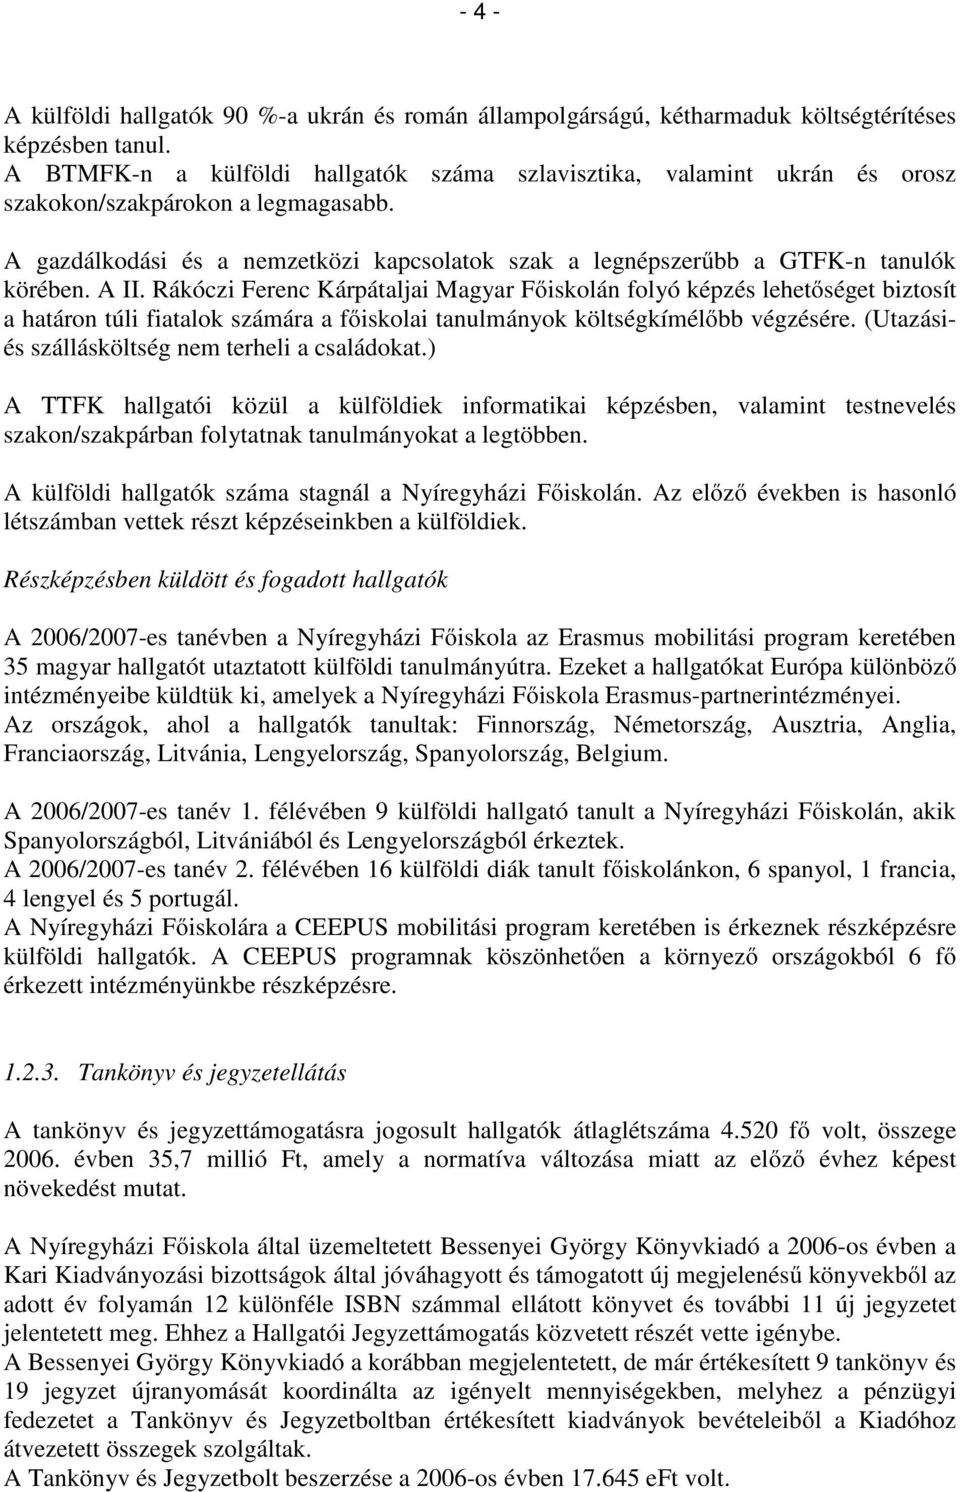 SZÖVEGES BESZÁMOLÓ (2006. évi) - PDF Ingyenes letöltés